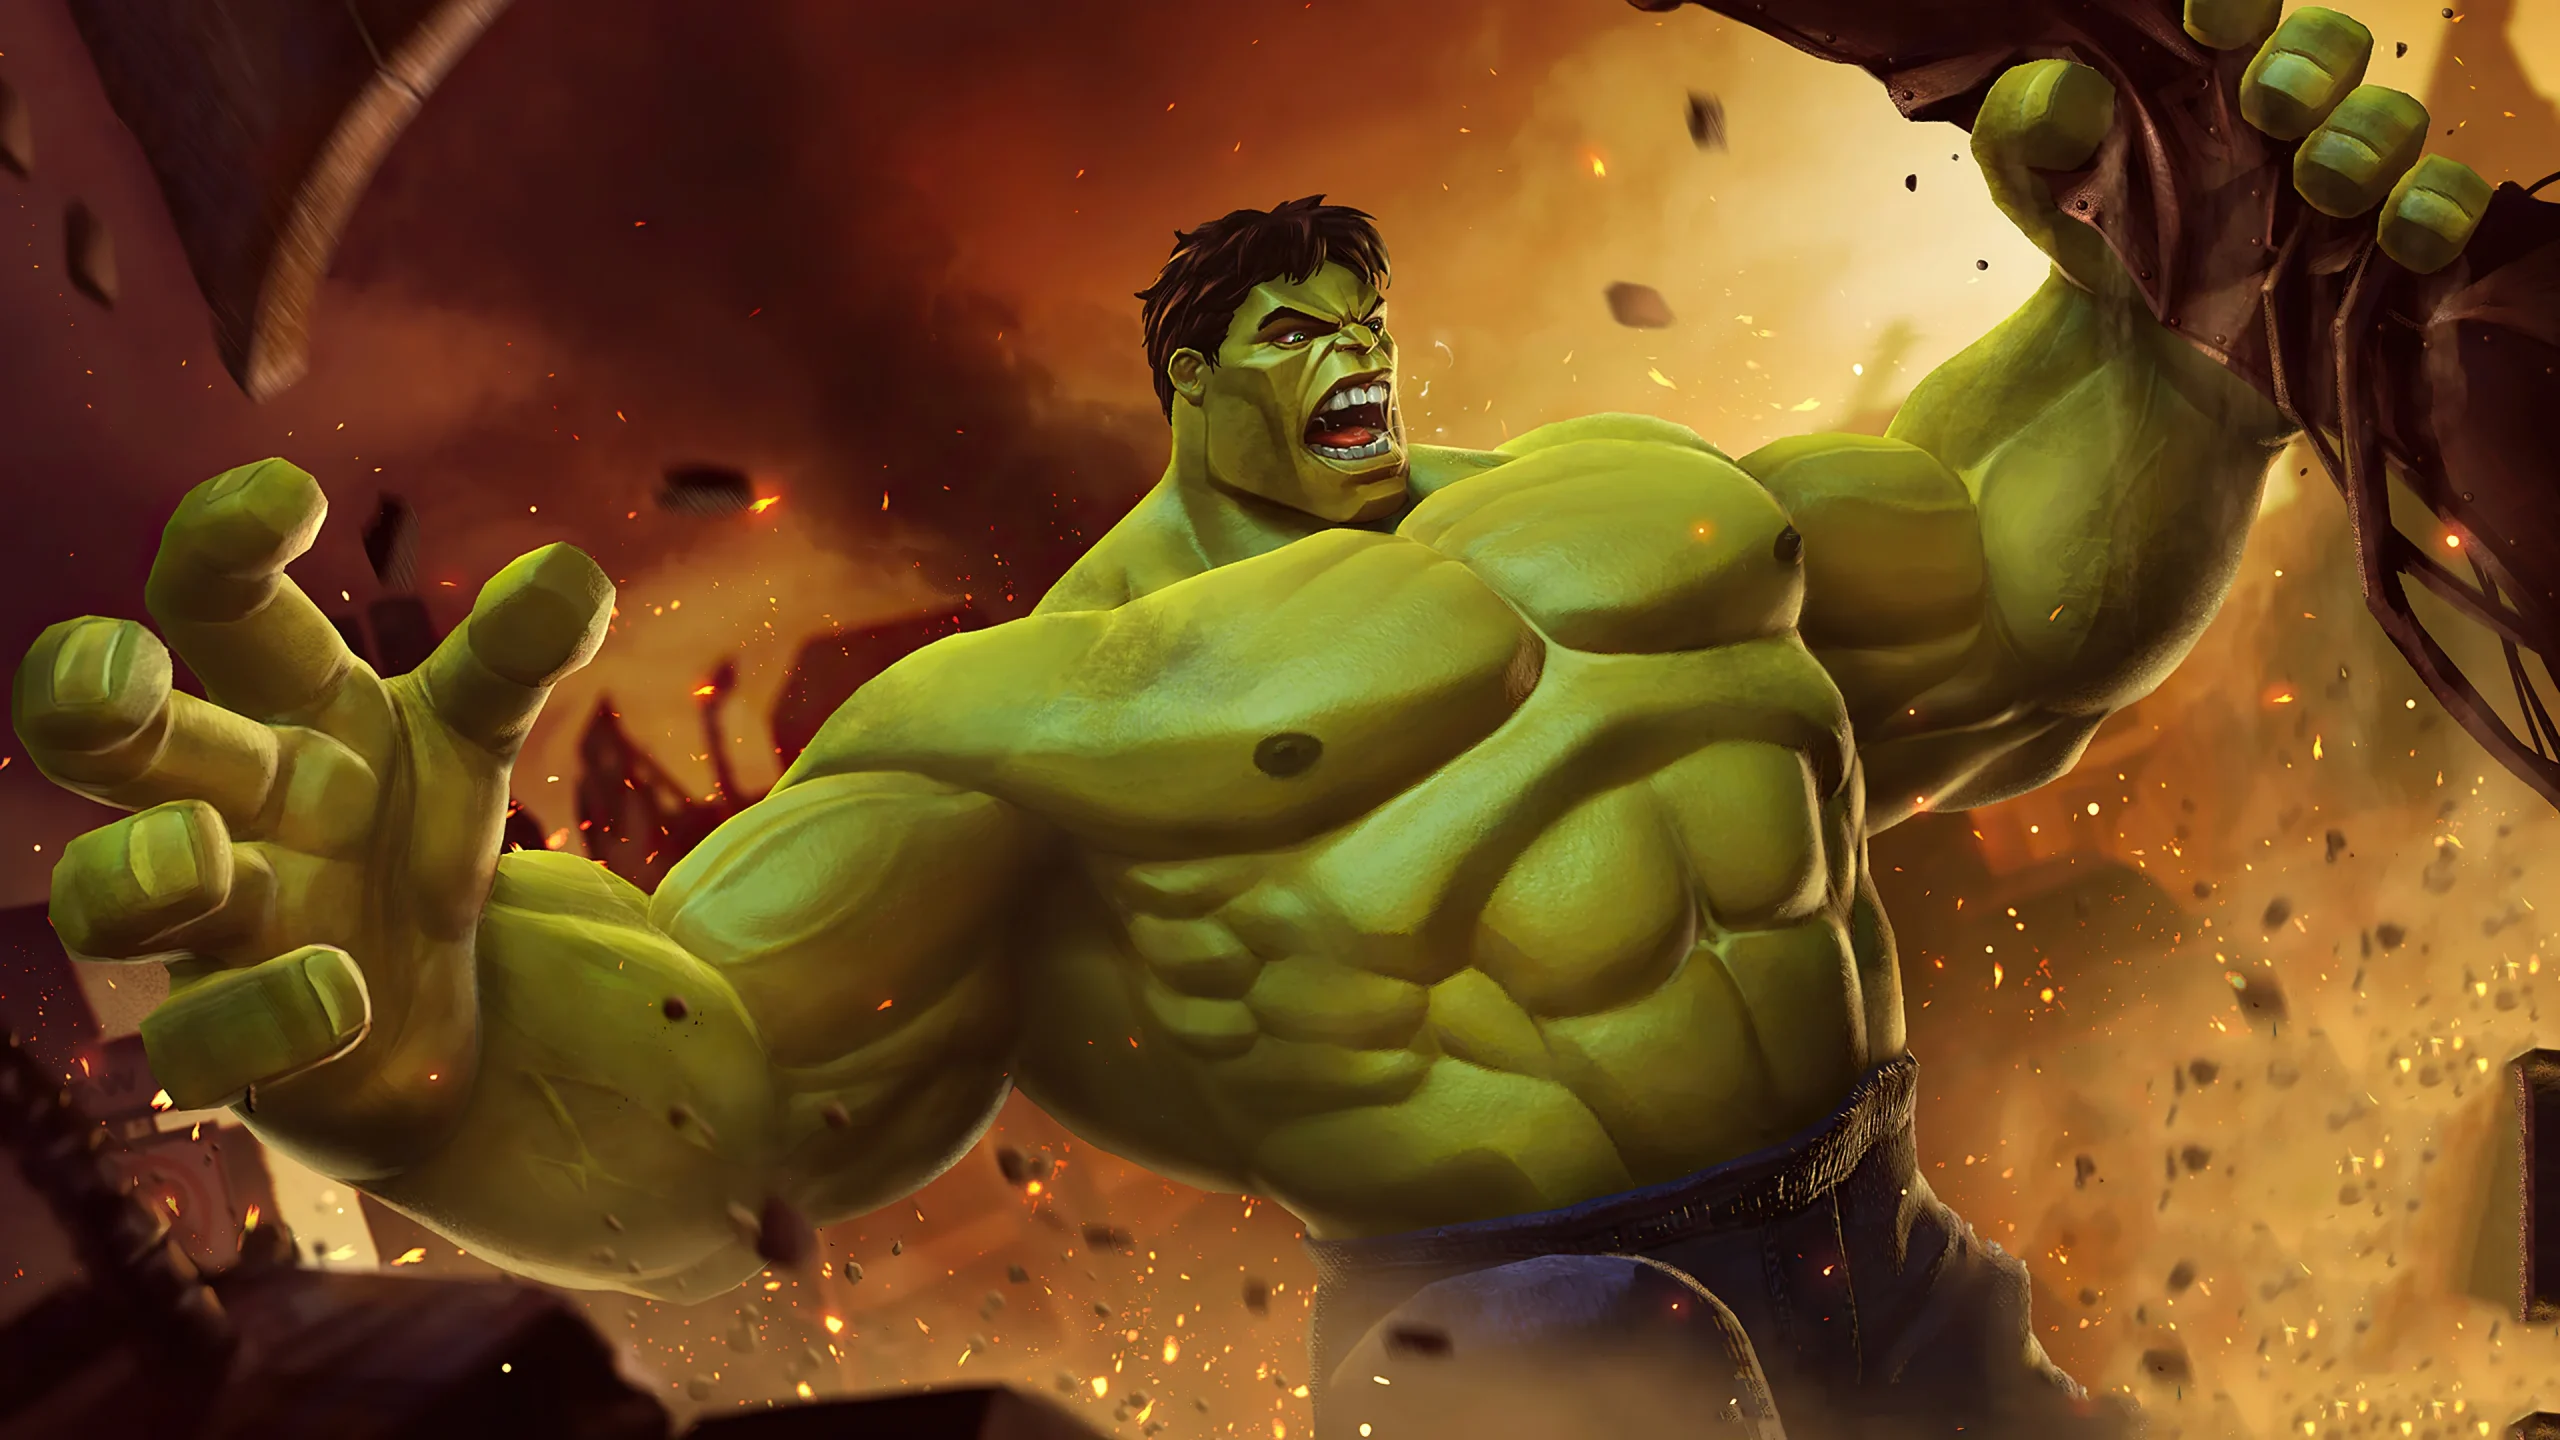 O brasileiro responsável pelas ilustrações de O Imortal Hulk, foi demitido da Marvel Comics por conta de uma de suas polêmicas. Entenda!